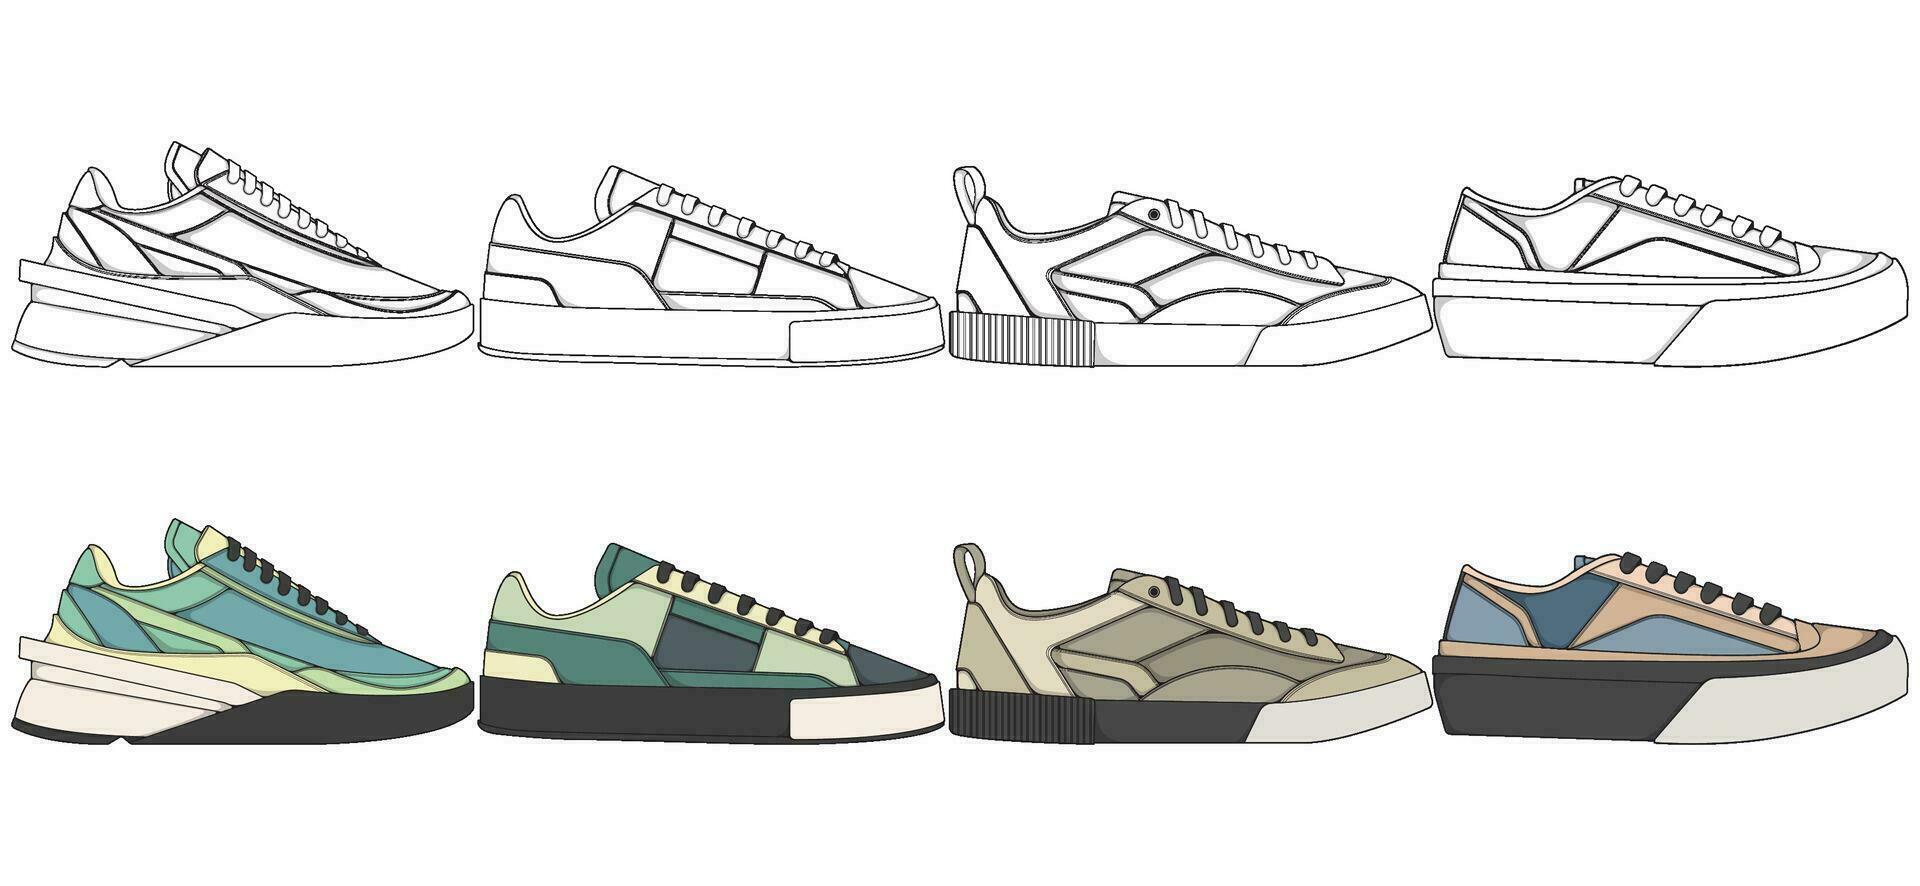 conjunto do sapatos tênis desenhando vetor, tênis desenhado dentro uma esboço estilo, empacotamento tênis formadores modelo, vetor ilustração.